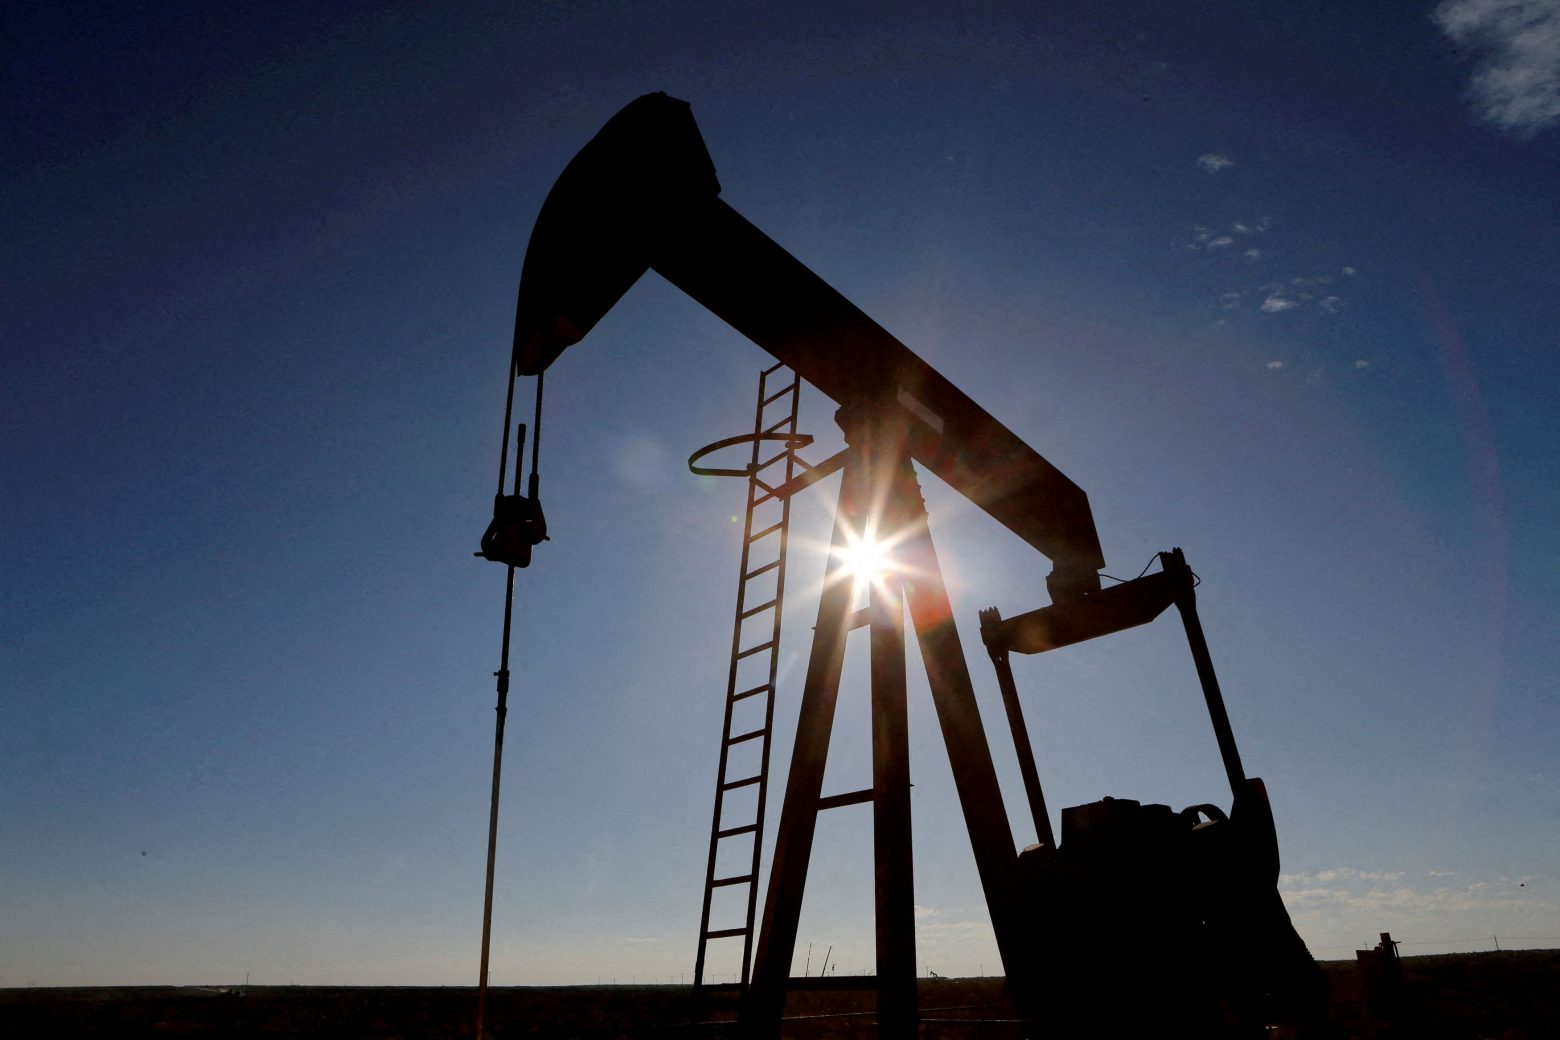 Ενεργειακή κρίση: Έκτακτος φόρος 33% στα διυλιστήρια για να μειωθεί η τιμή του πετρελαίου